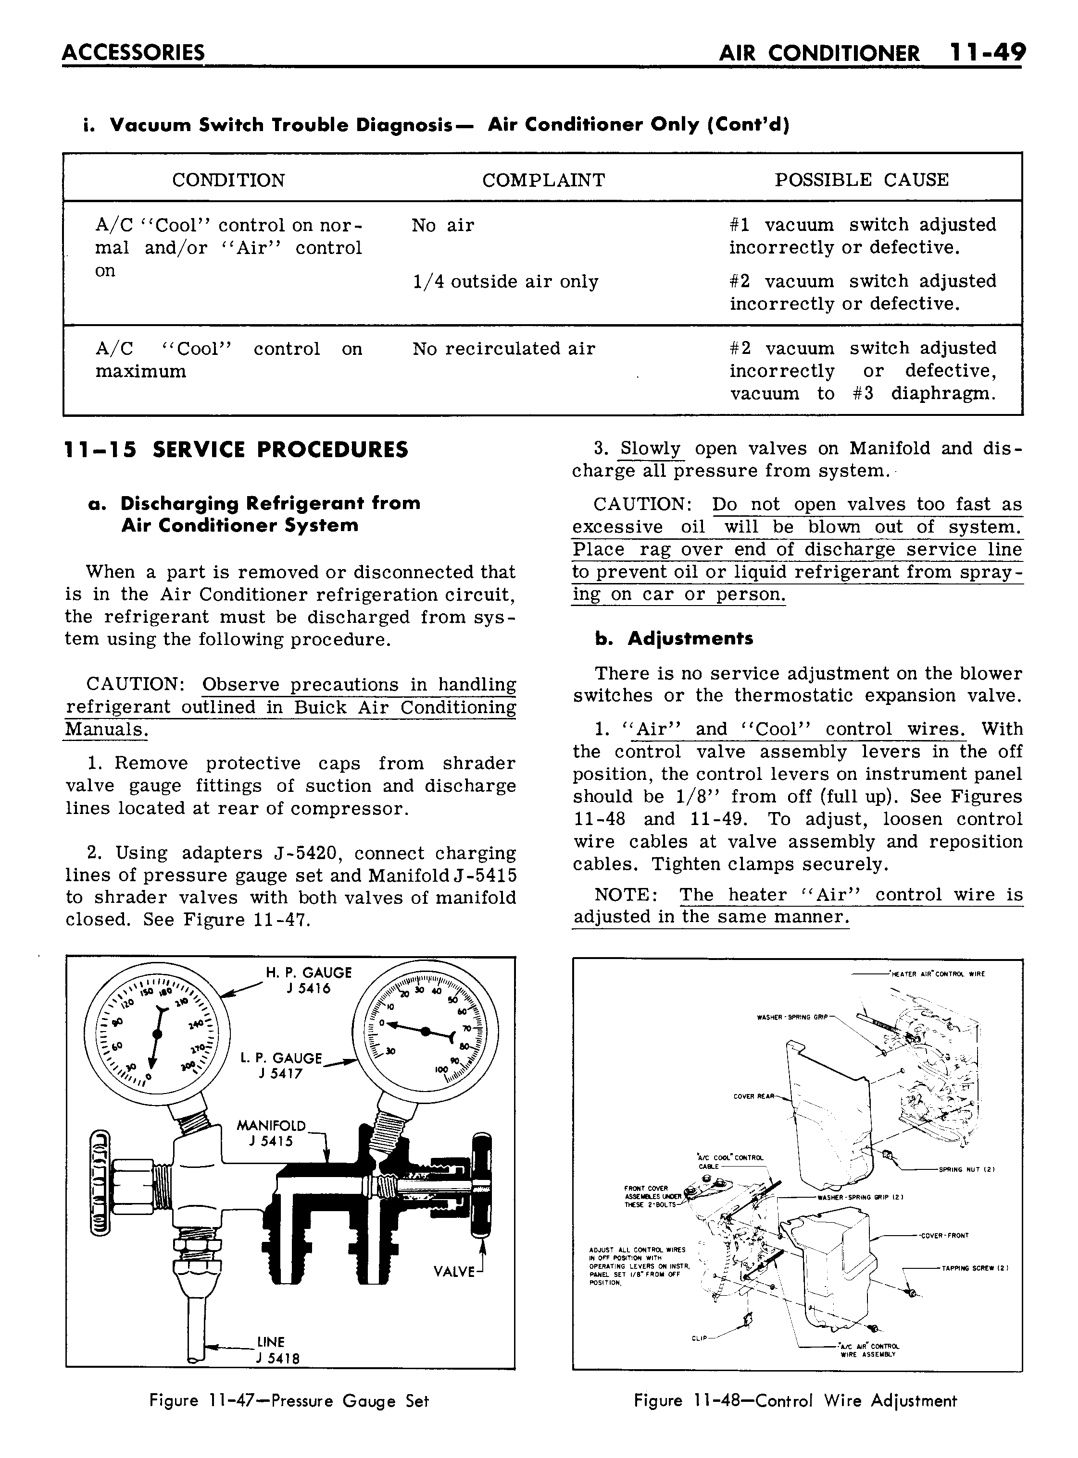 n_11 1961 Buick Shop Manual - Accessories-049-049.jpg